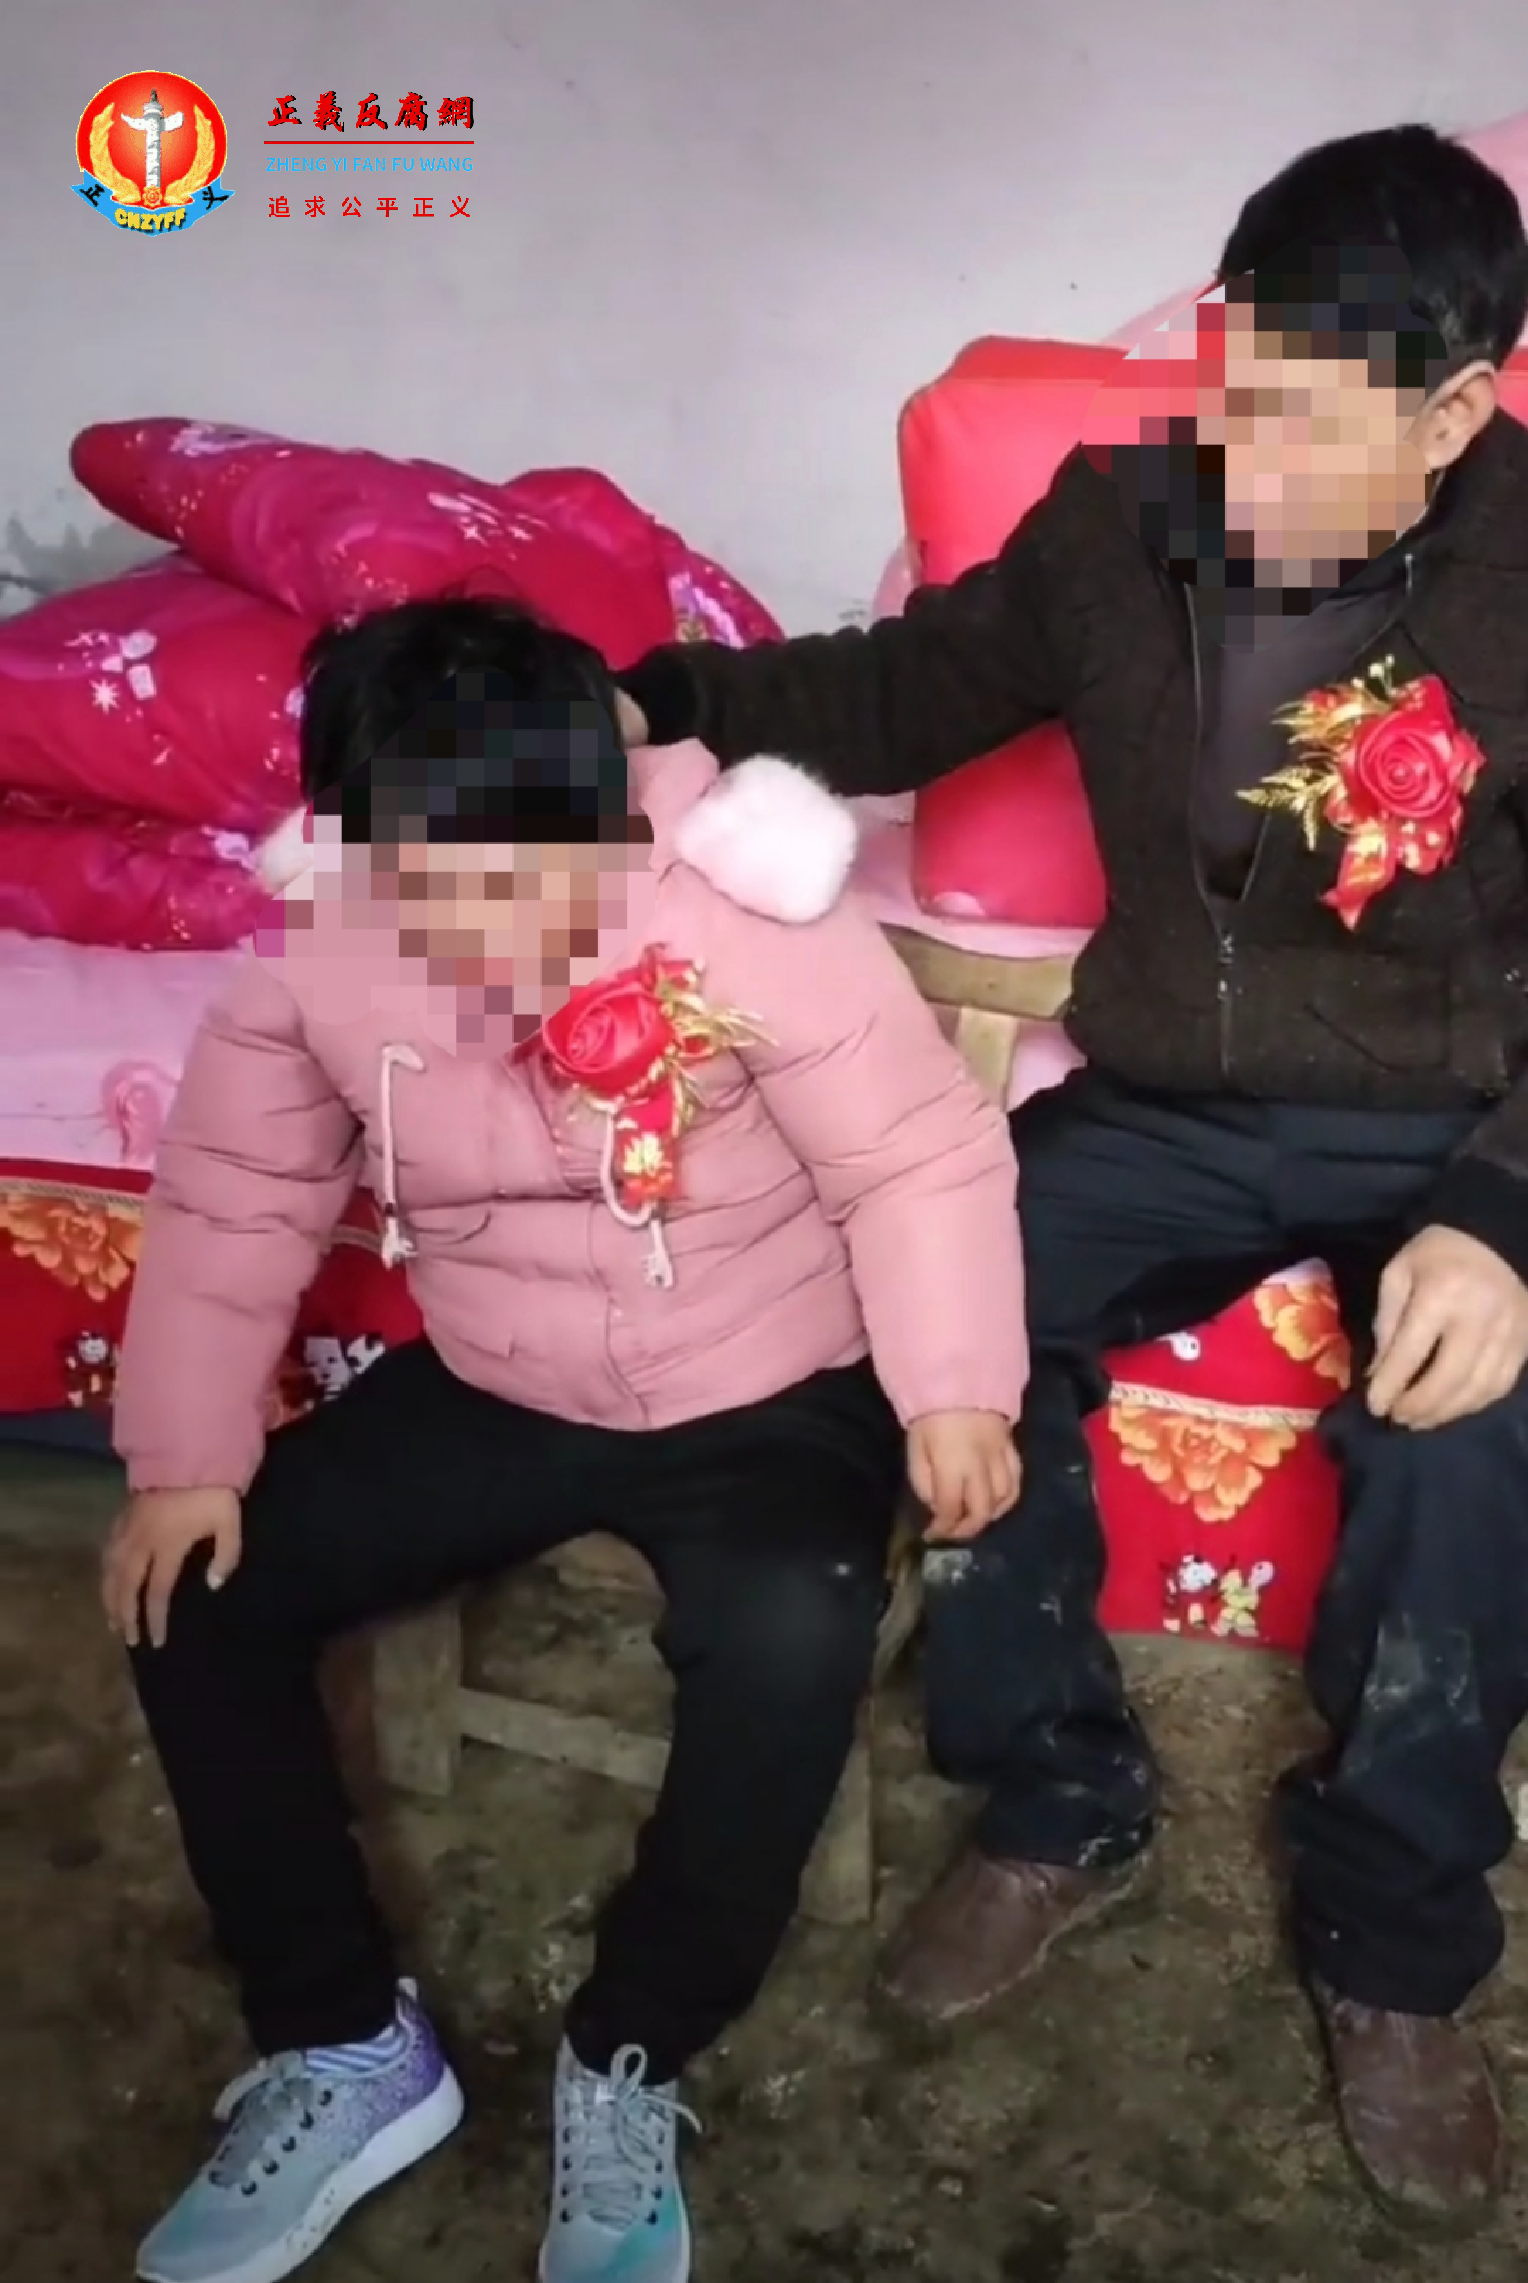 日前，河南一段婚嫁视频在网路热传。视频中，一疑似未成年女子嫁给一位大叔，女子大声哭喊。.png